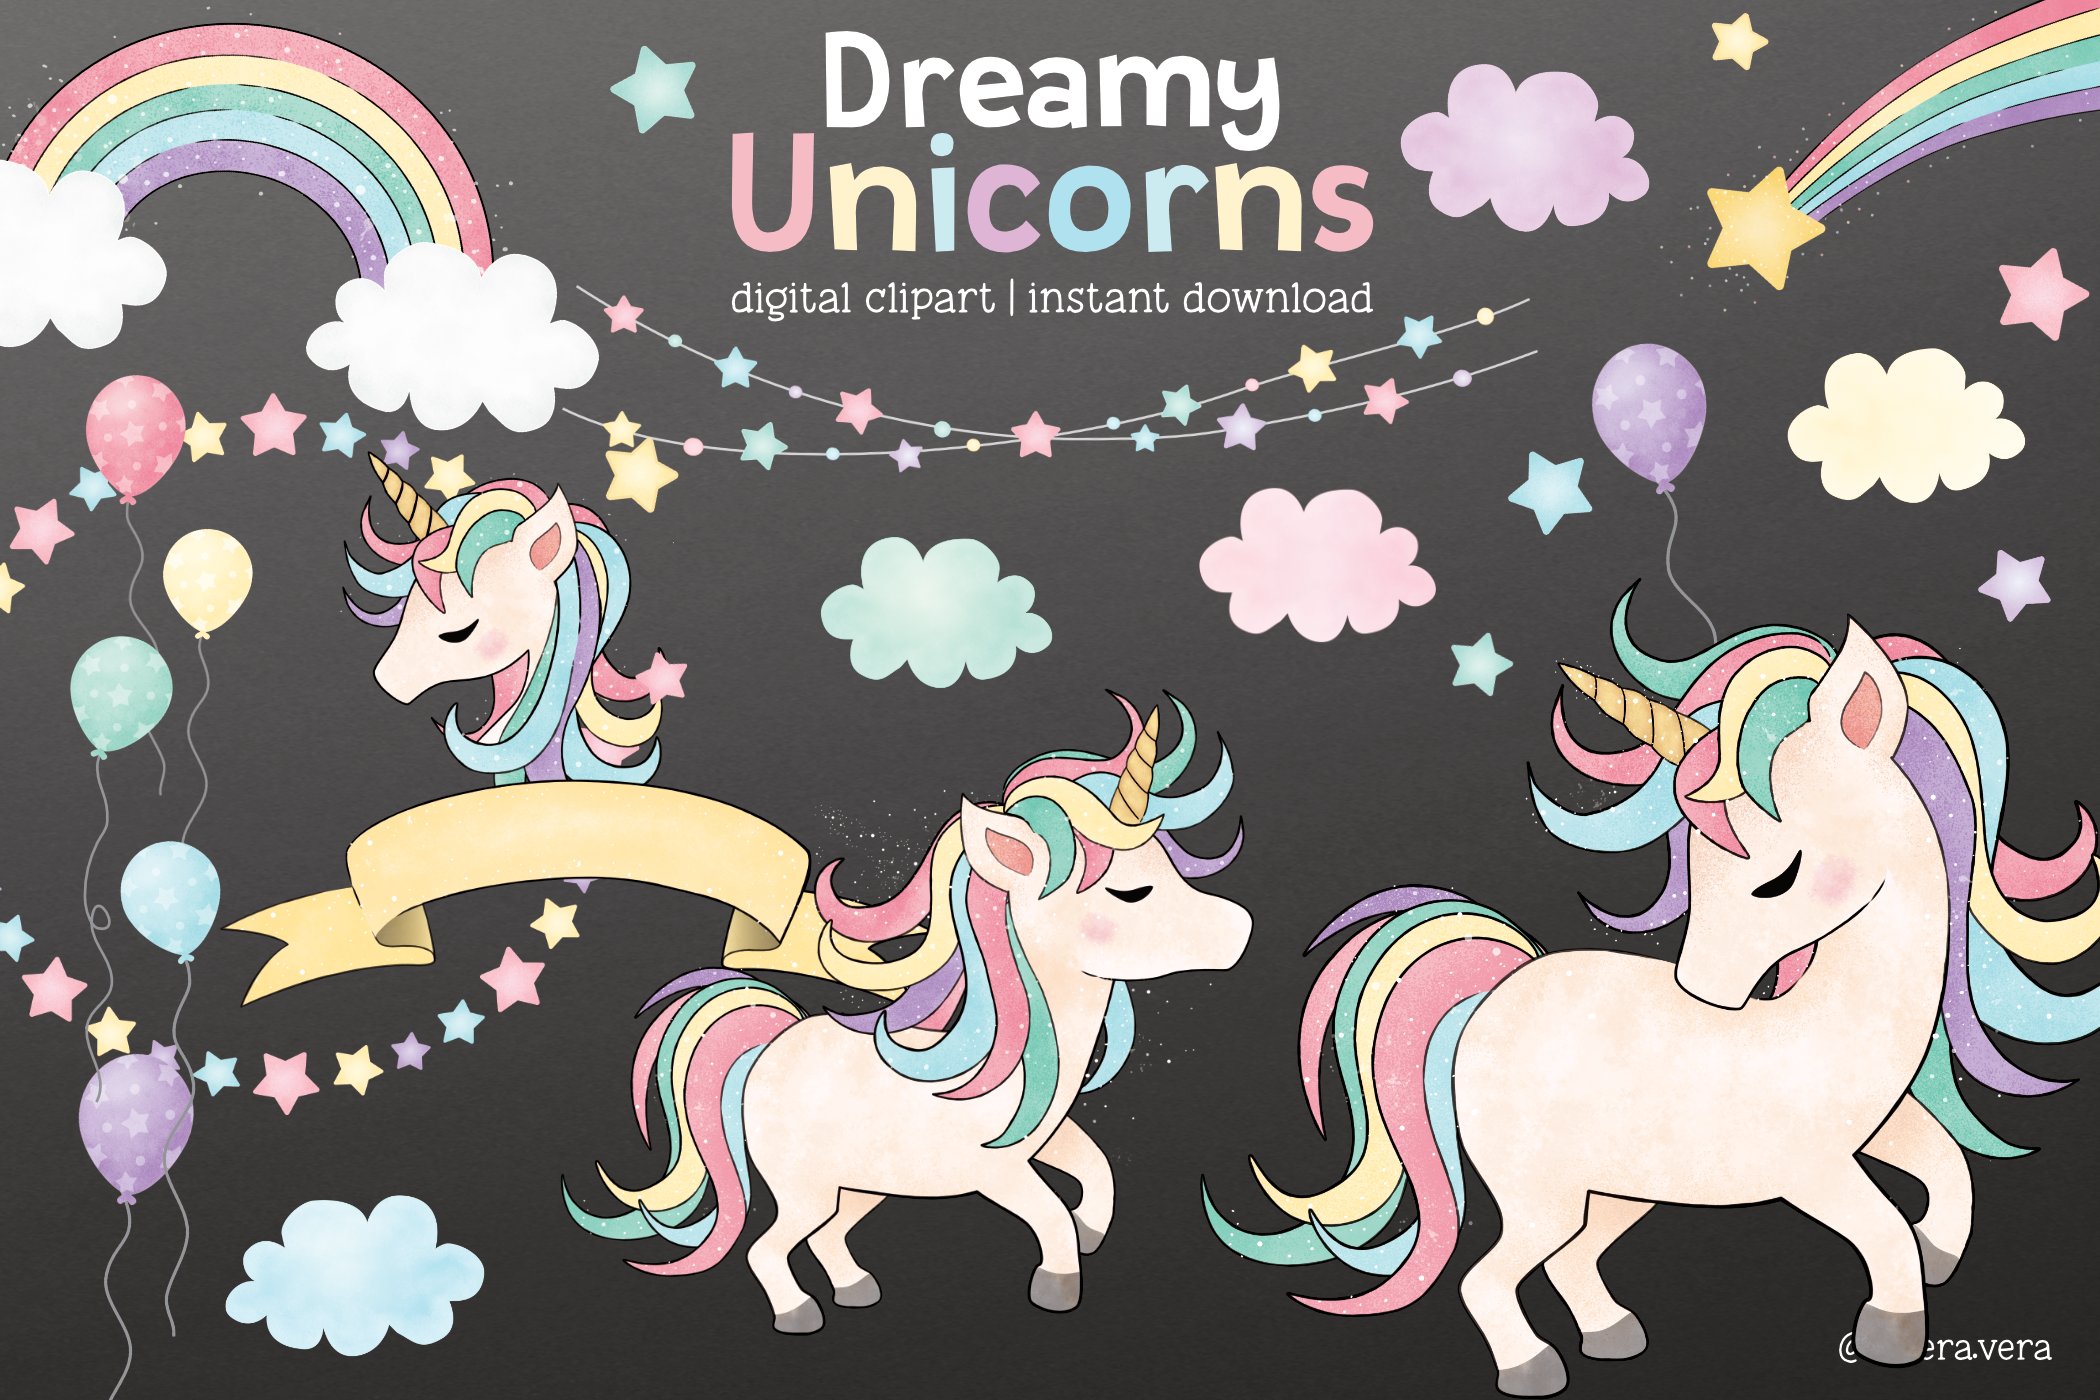 Dreamy Unicorn Cliparts preview image.